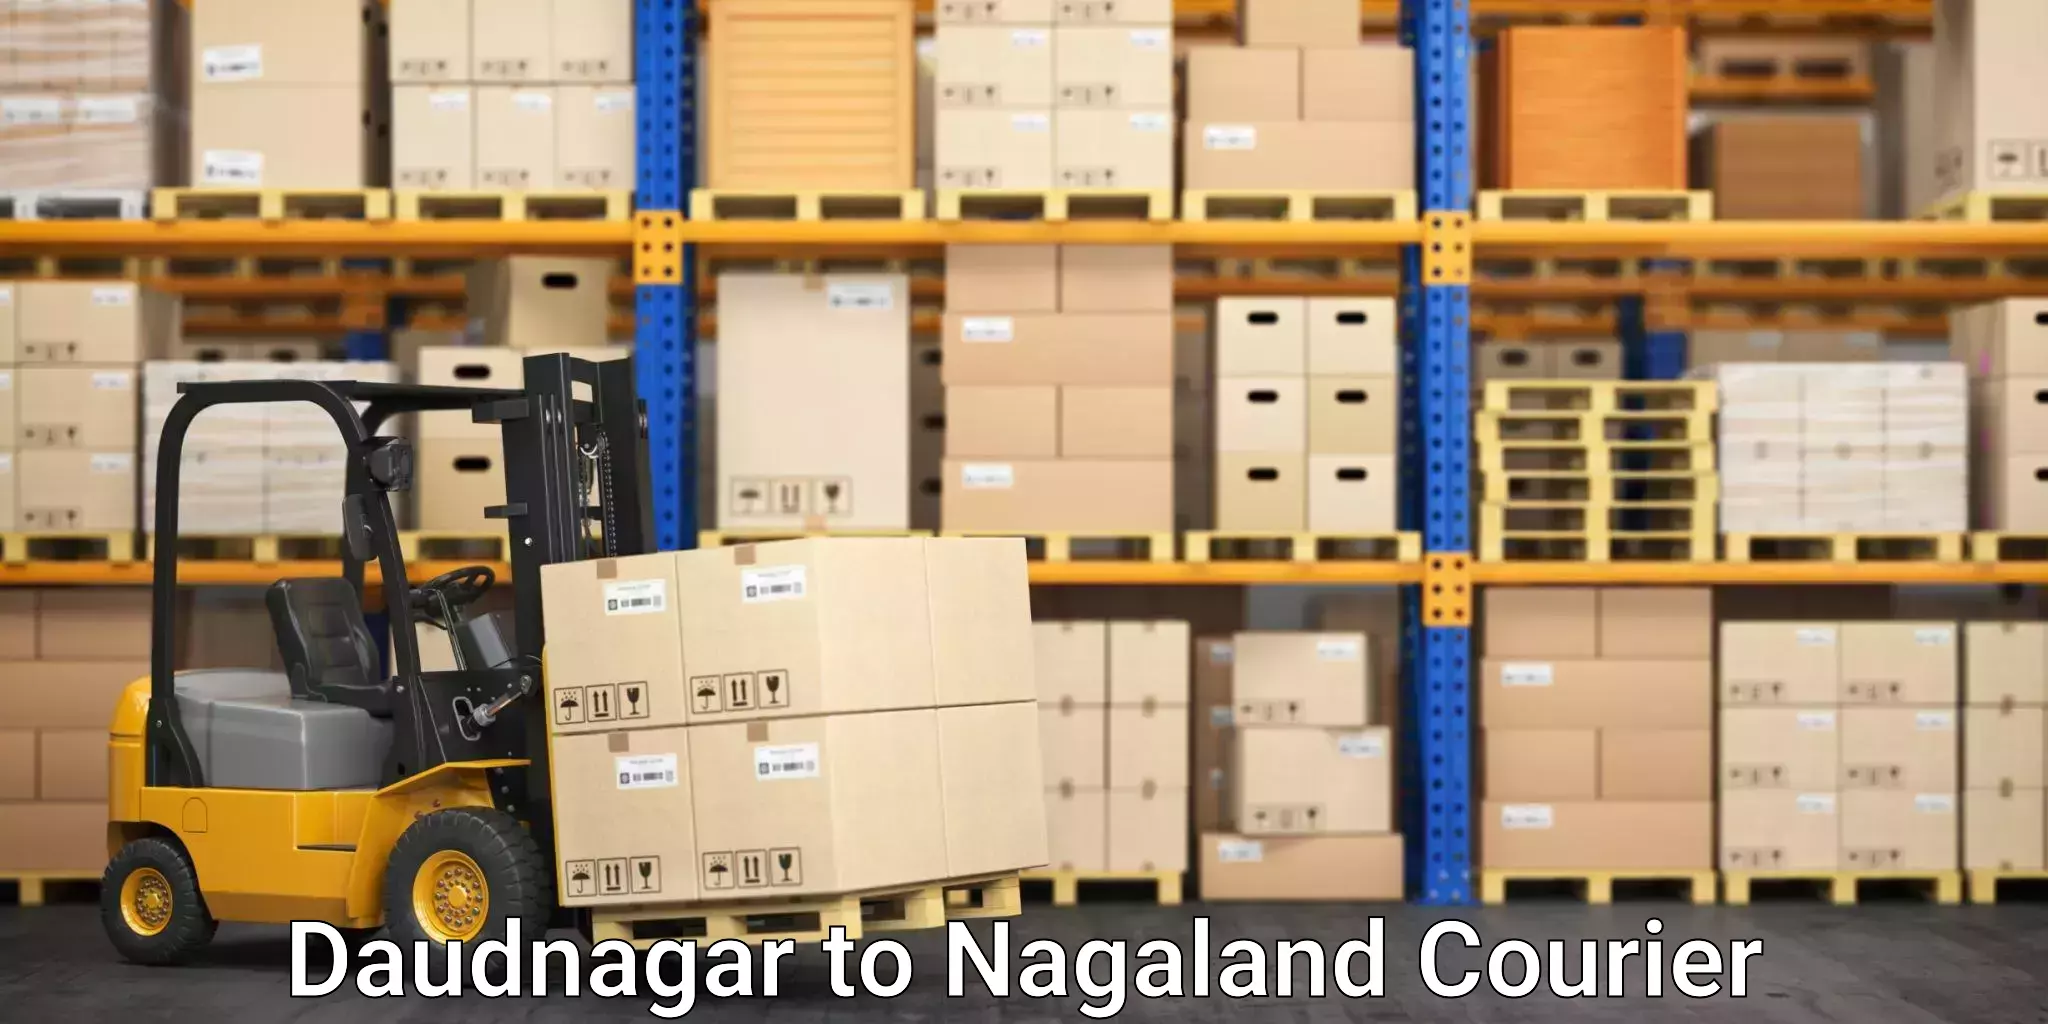 Efficient household movers Daudnagar to Nagaland